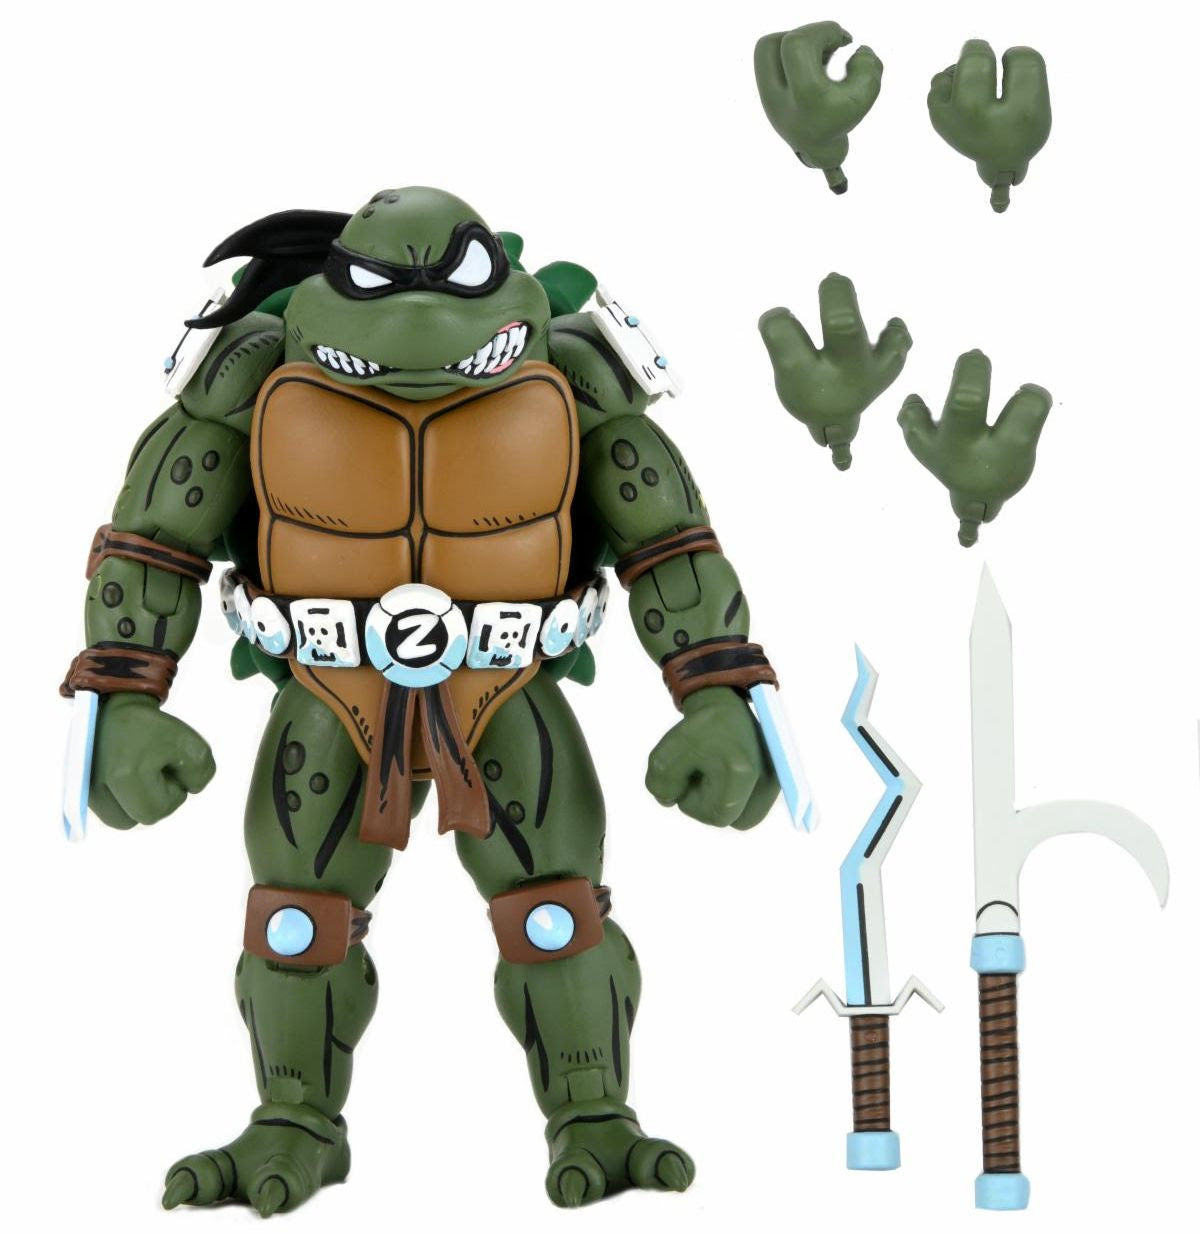 NECA - Teenage Mutant Ninja Turtles (Archie Comics) 7" Scale Action Figure - Slash